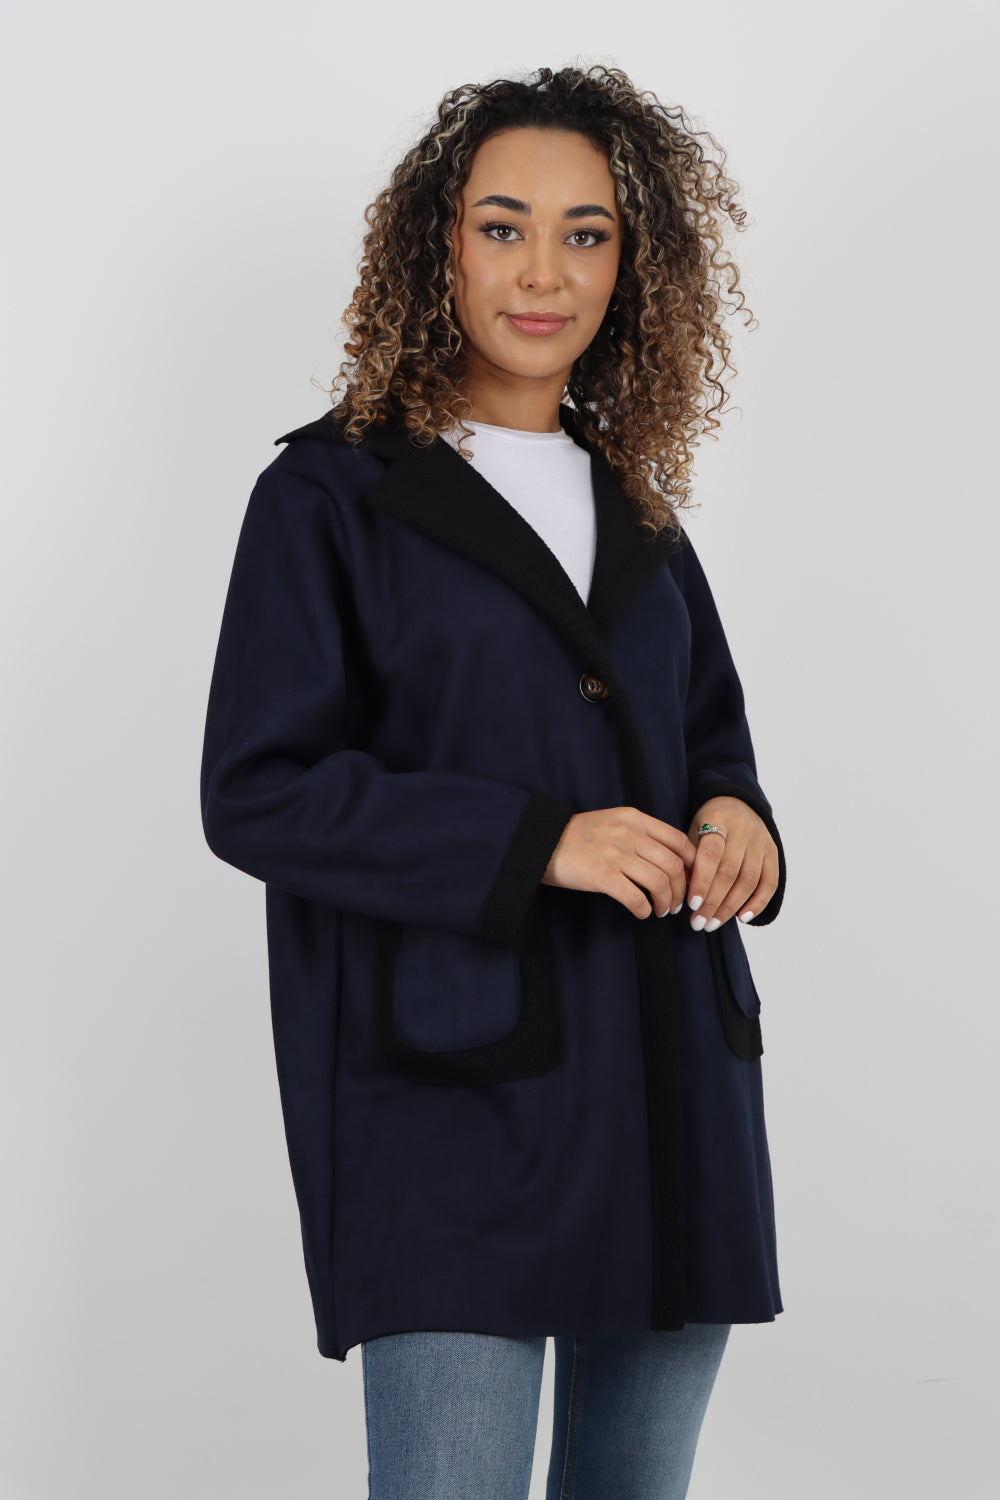 Italian Fleece Lined Long Sleeve Blazer